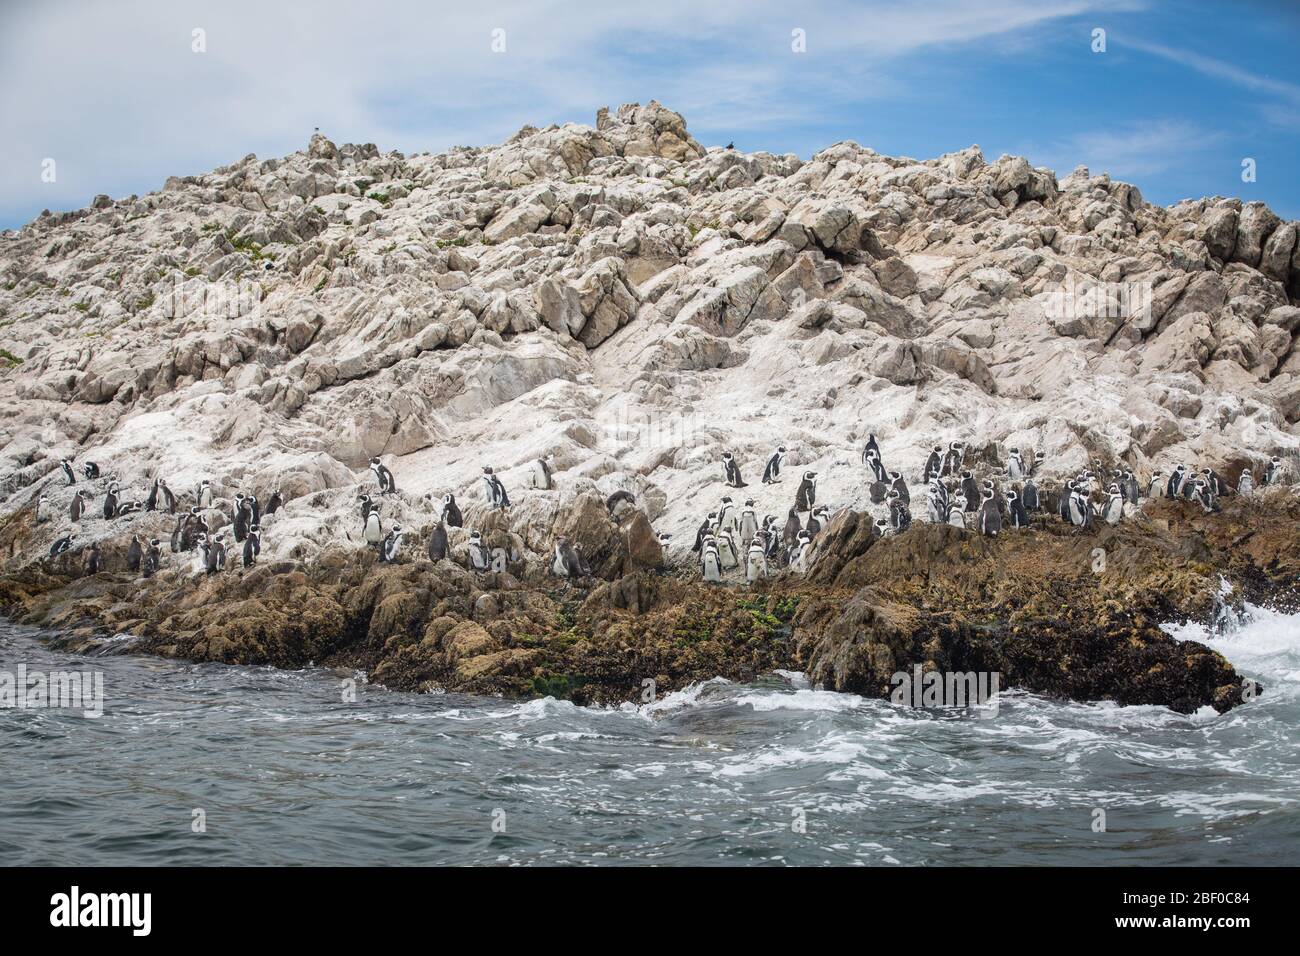 La isla de Saint Croix en la bahía de Algoa, la bahía de Nelson Mandela, Port Elizabeth, Sudáfrica, es la colonia de cría más grande de pingüinos africanos en peligro de extinción Foto de stock